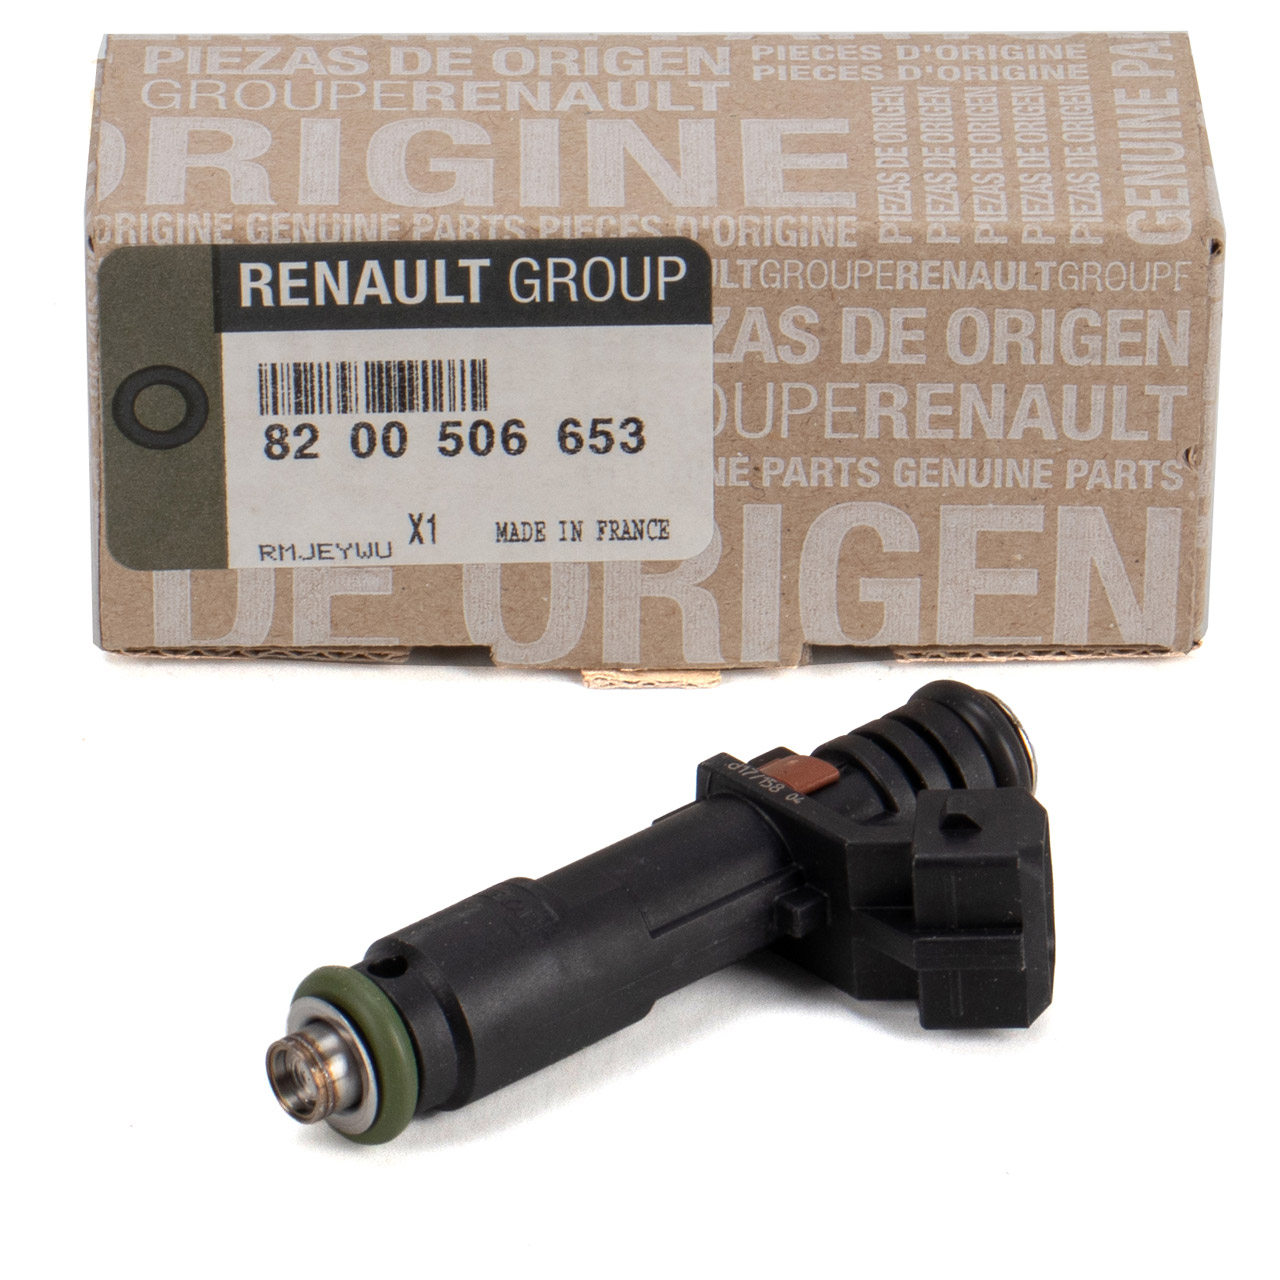 ORIGINAL Renault Einspritzventil Einspritzanlage Twingo 2 1.2 58 PS 8200506653